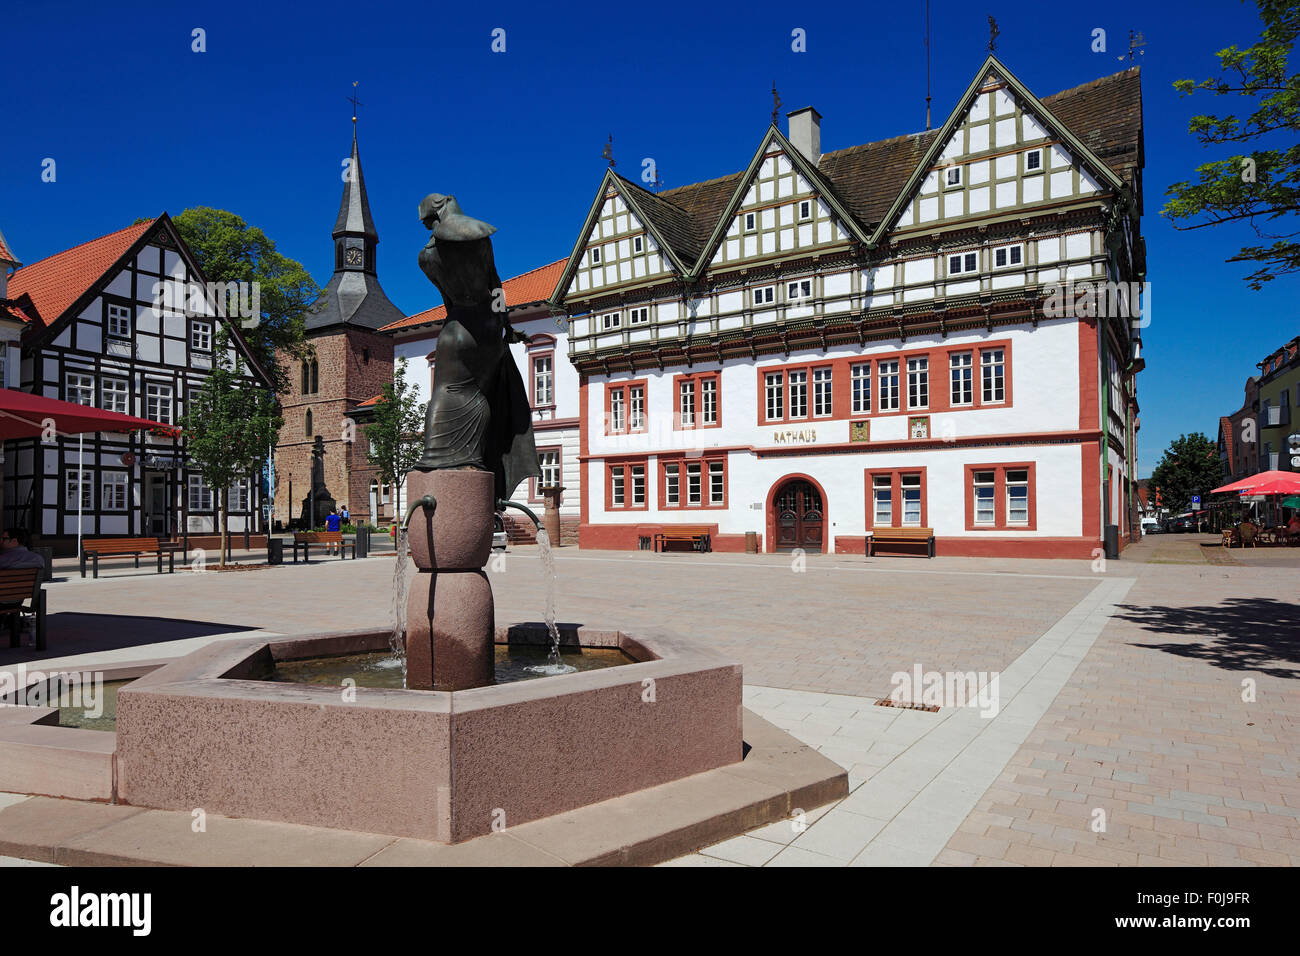 Marktplatz mit Rathaus, vorn der Alheyd-Brunnen, hinten der Martiniturm, Blomberg, Weserbergland, Naturpark Teutoburger Wald / Eggegebirge, Nordrhein- Stock Photo